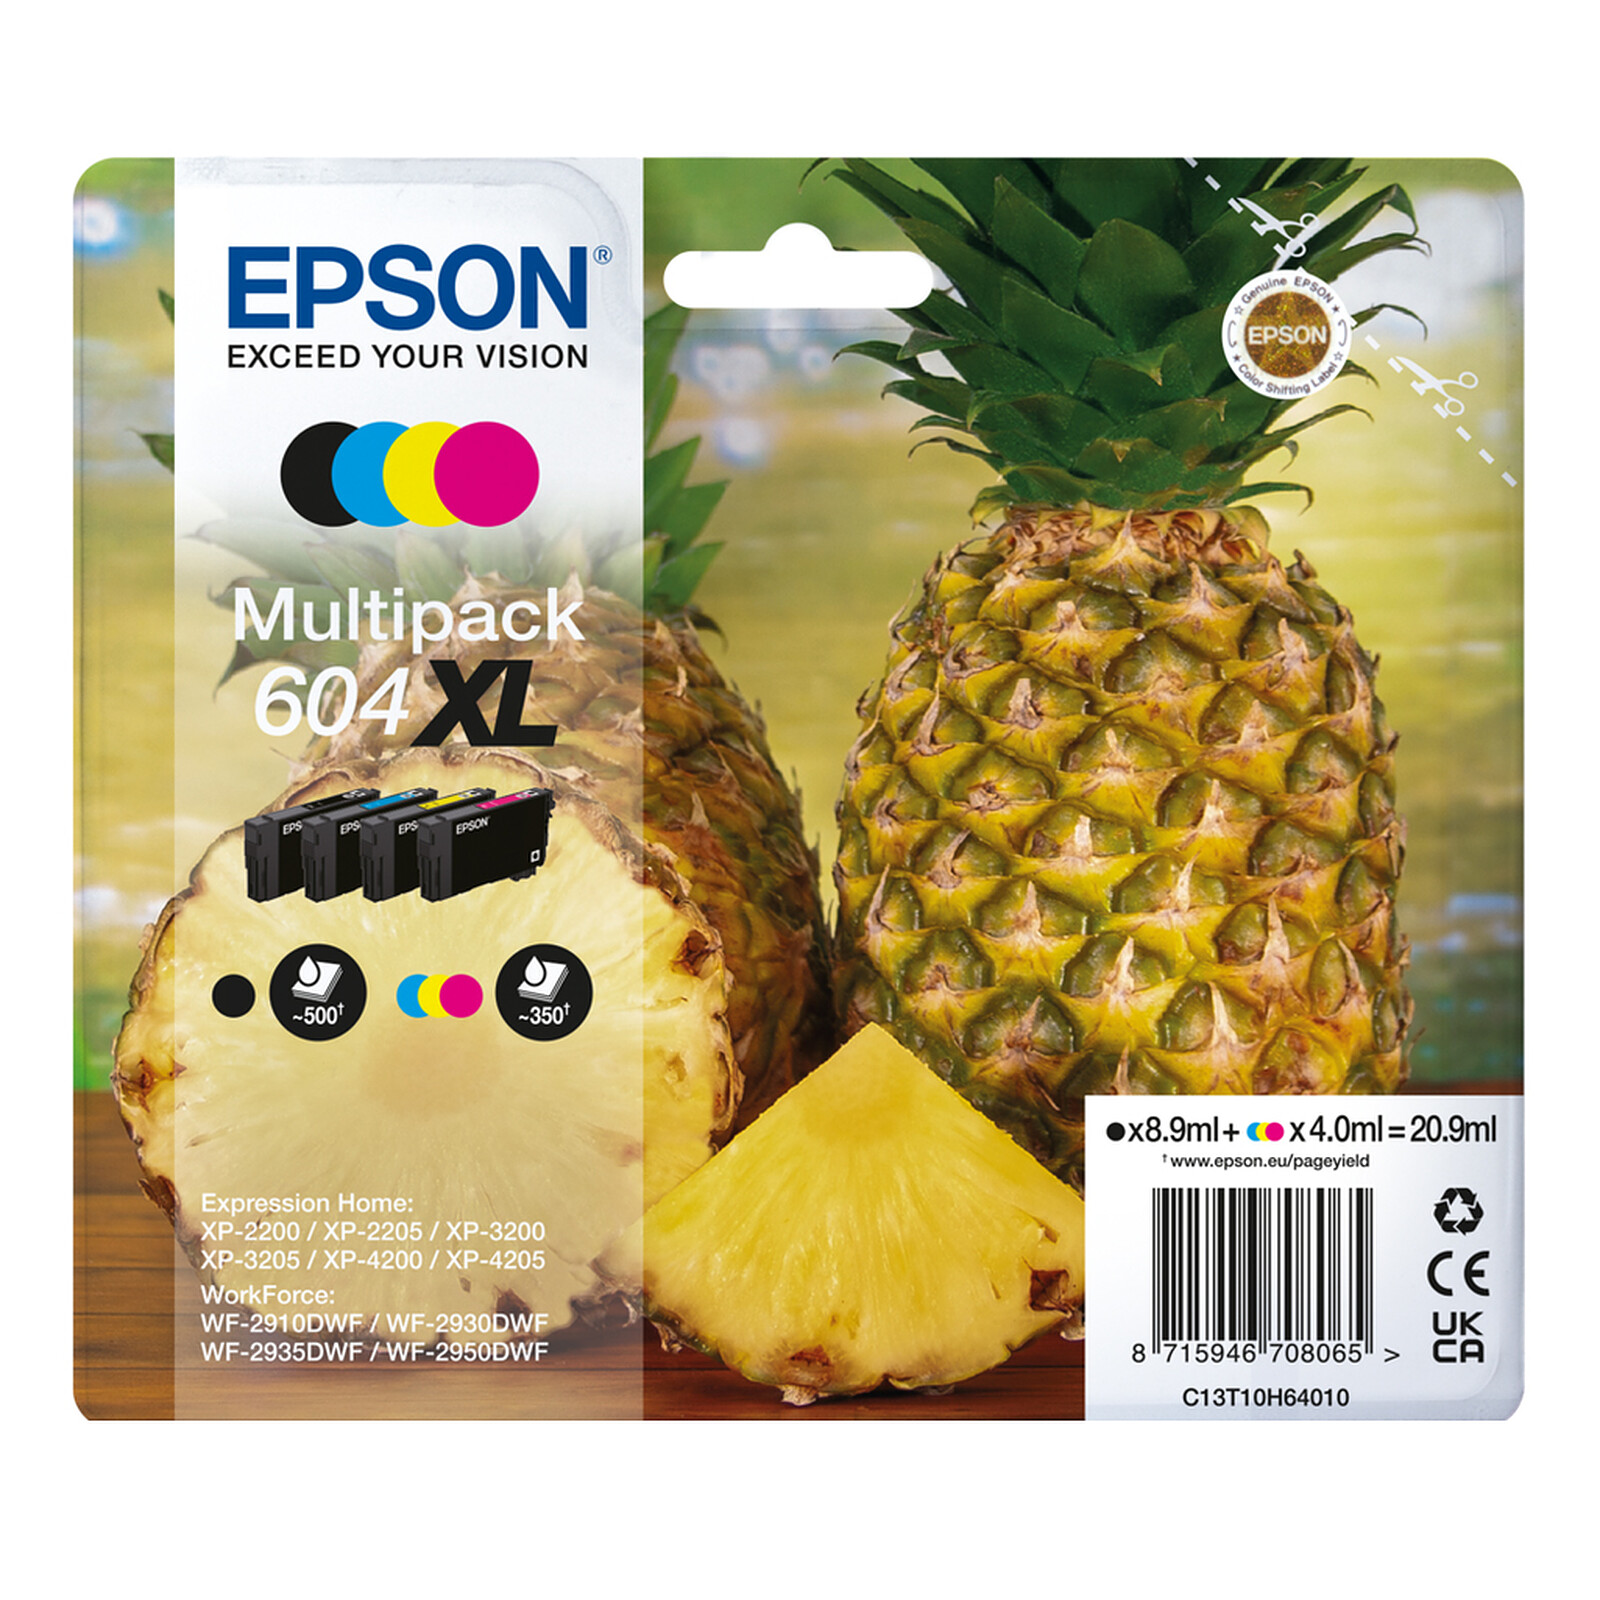 Epson Ananas Multipack 604XL - Cartouche imprimante - LDLC